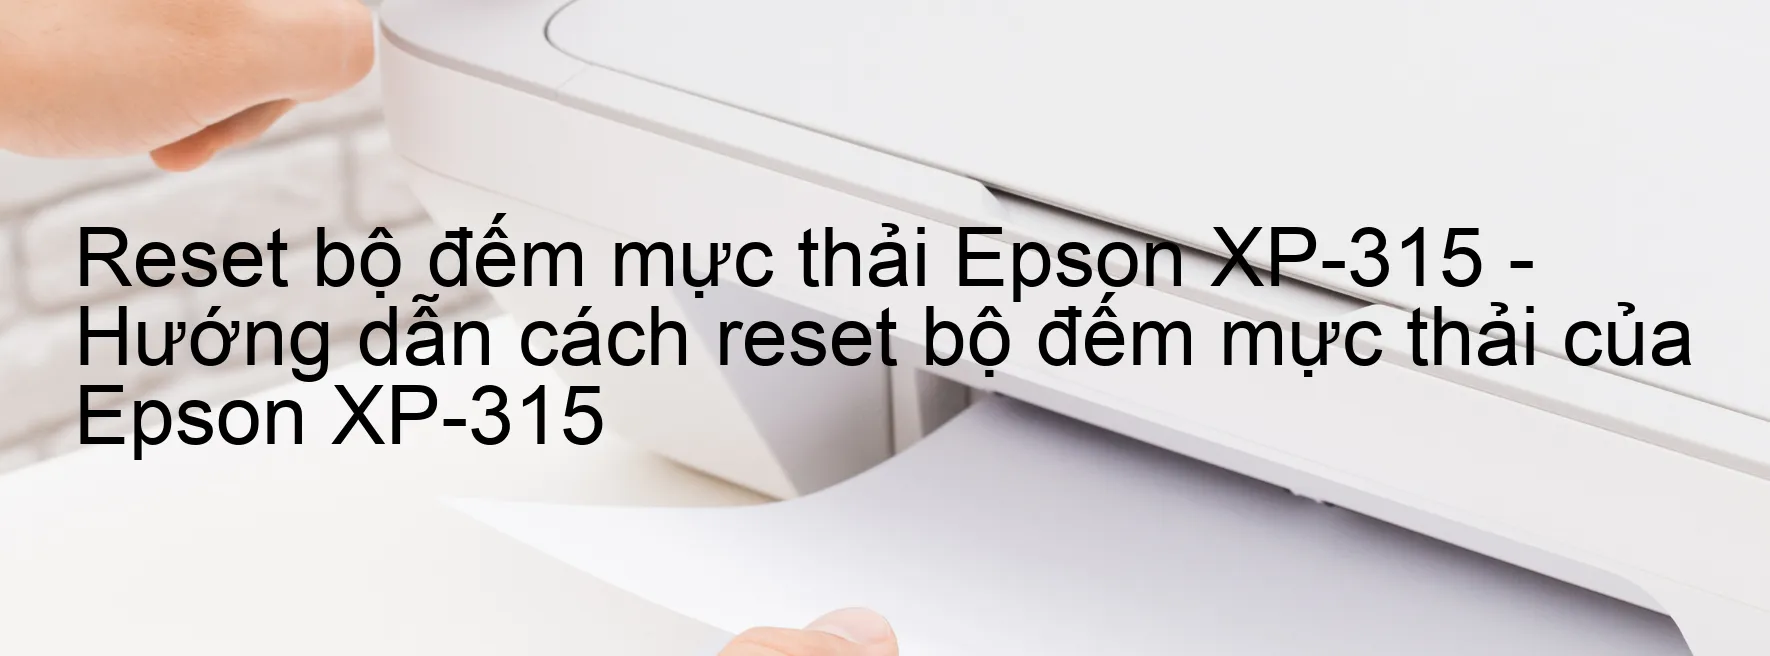 Reset bộ đếm mực thải Epson XP-315 - Hướng dẫn cách reset bộ đếm mực thải của Epson XP-315